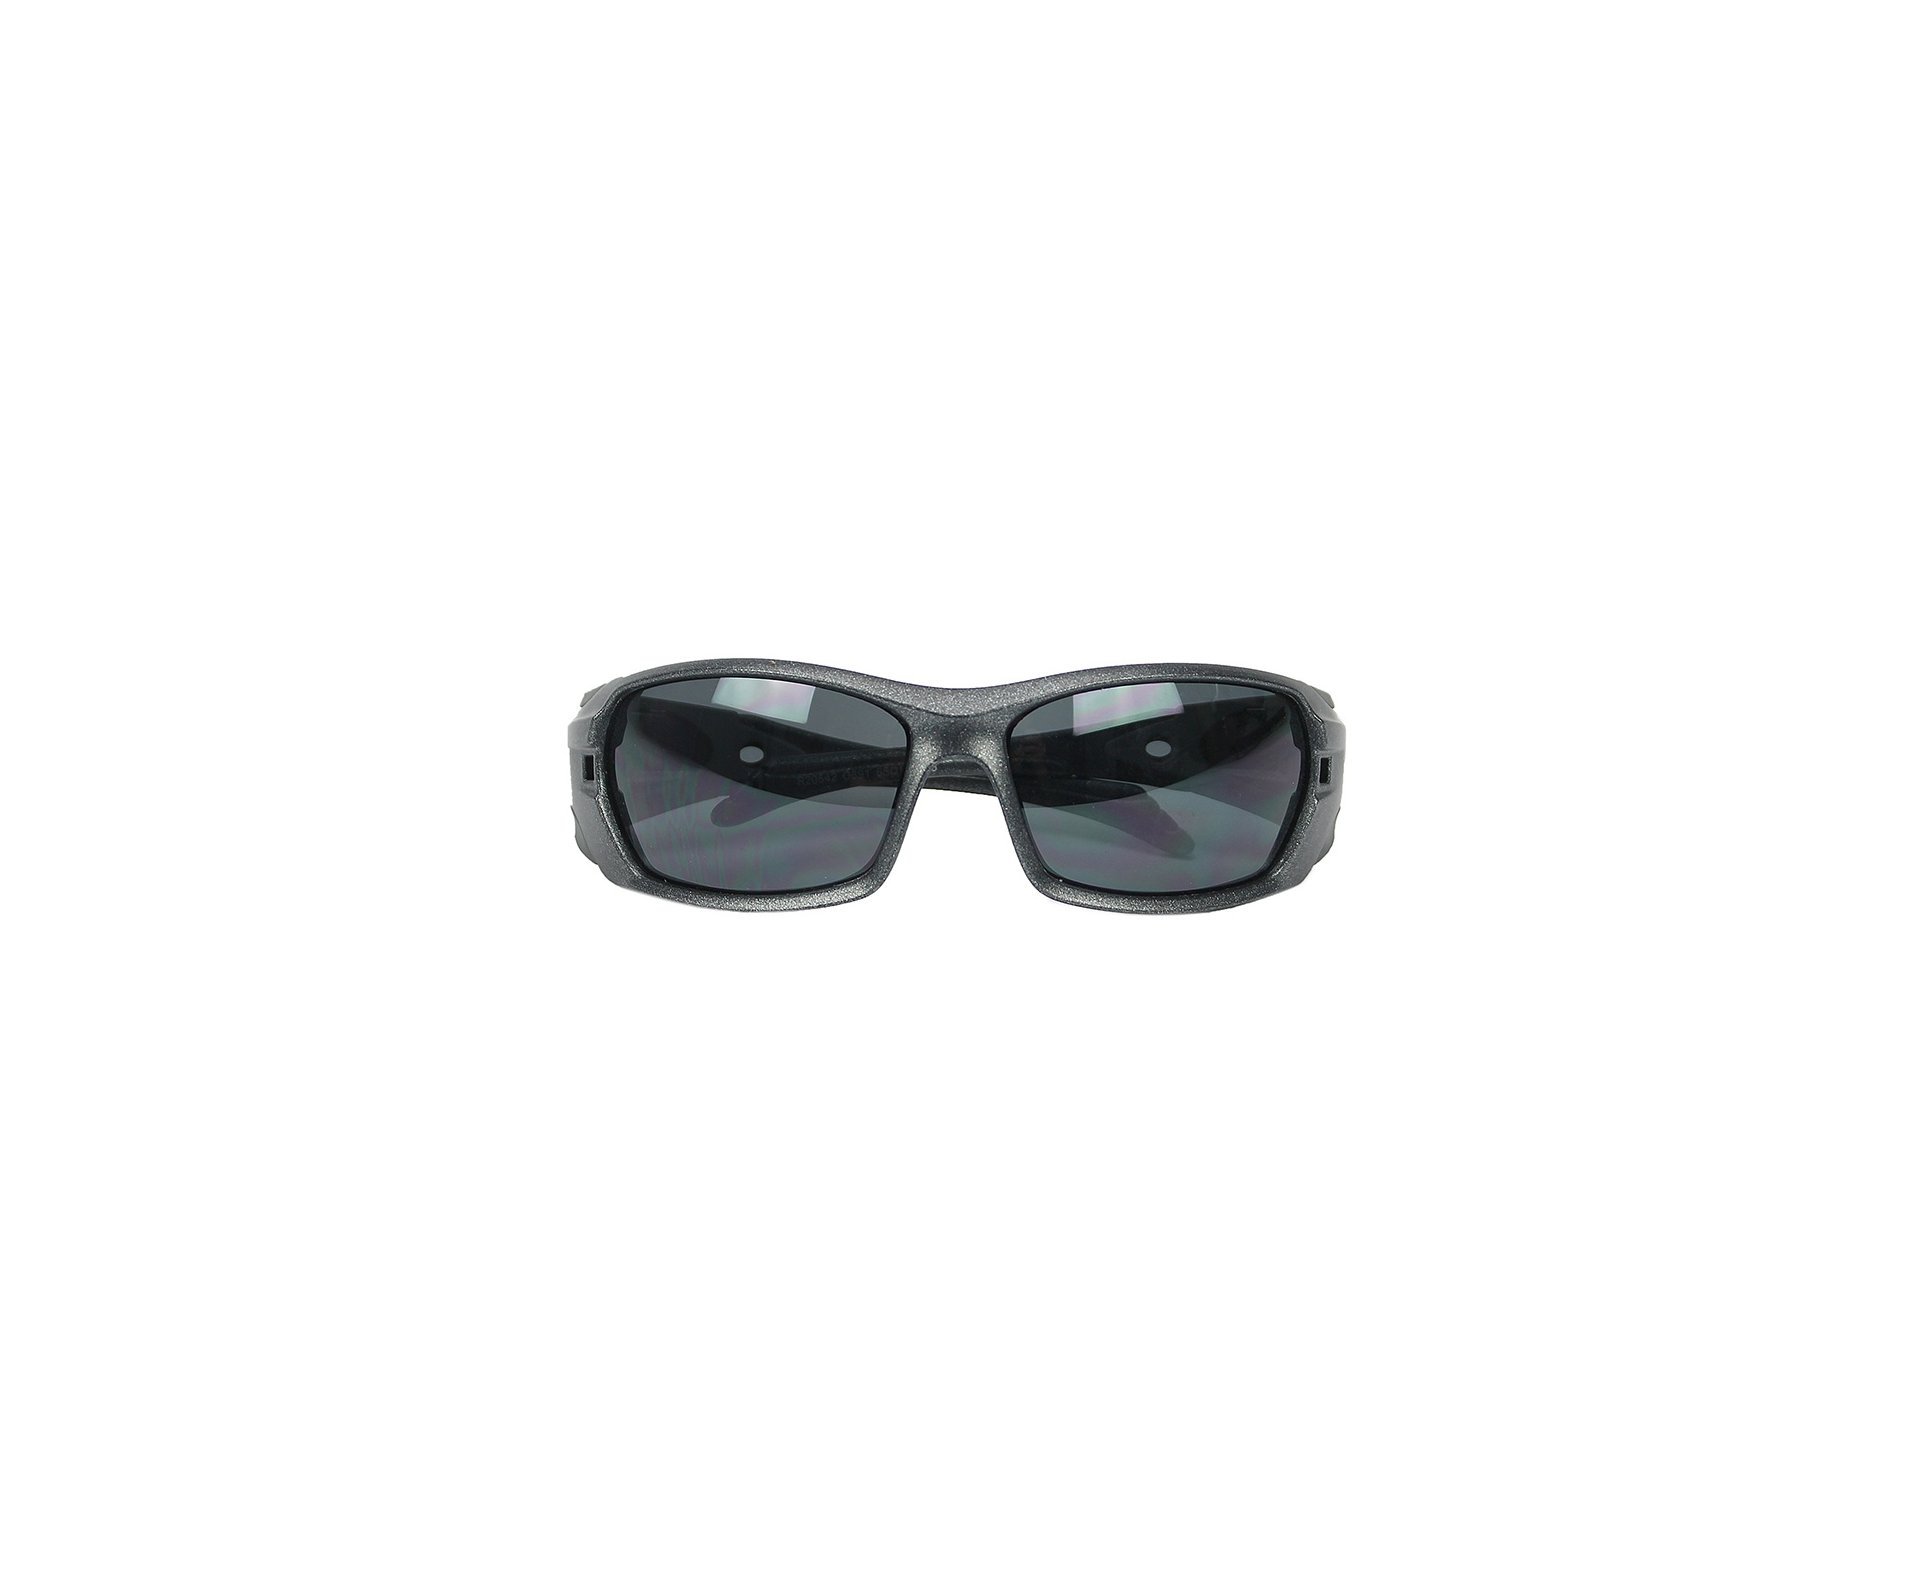 Óculos Balístico com Armação Prata - Lente Prata 20542 - C891 - Insano Shades